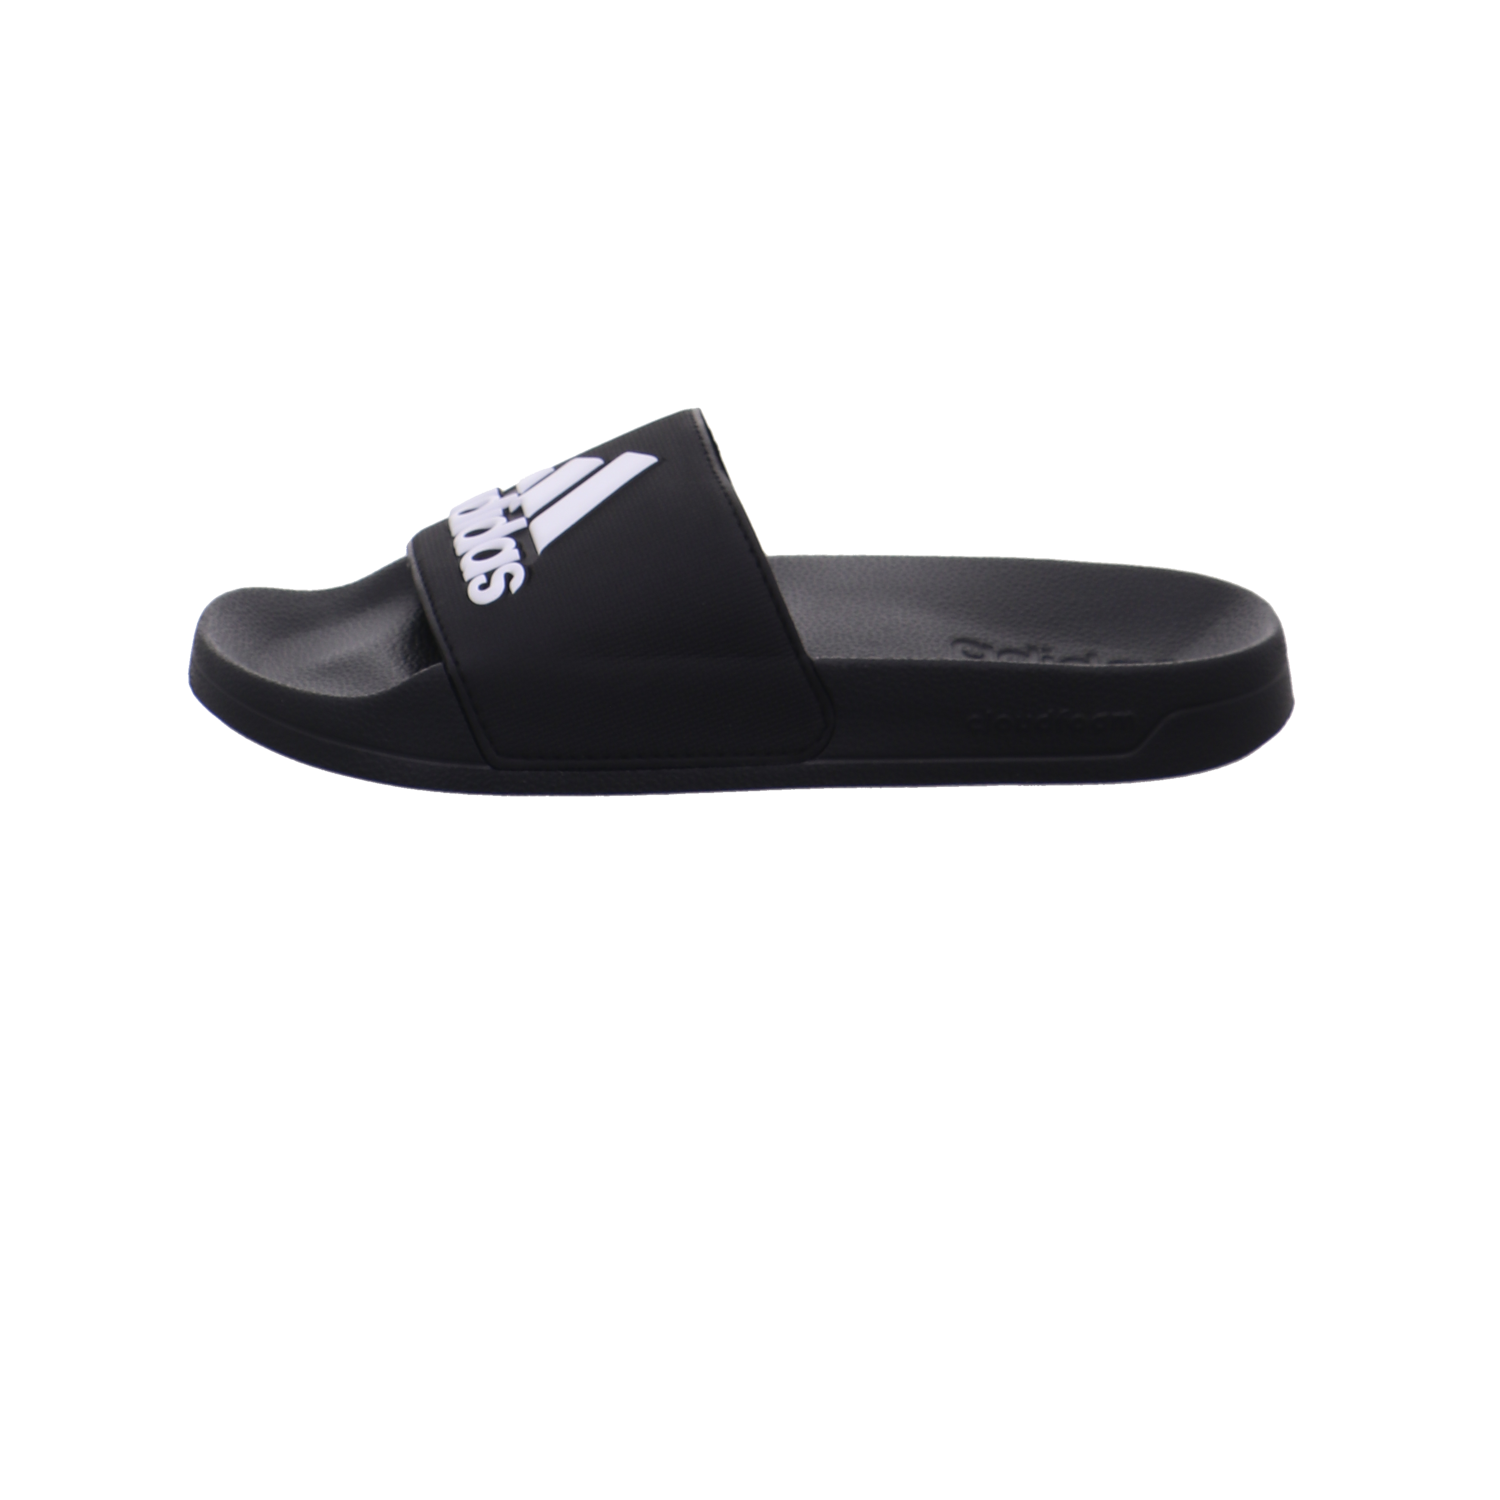 Adidas Schuhe  schwarz-weiß Bild1